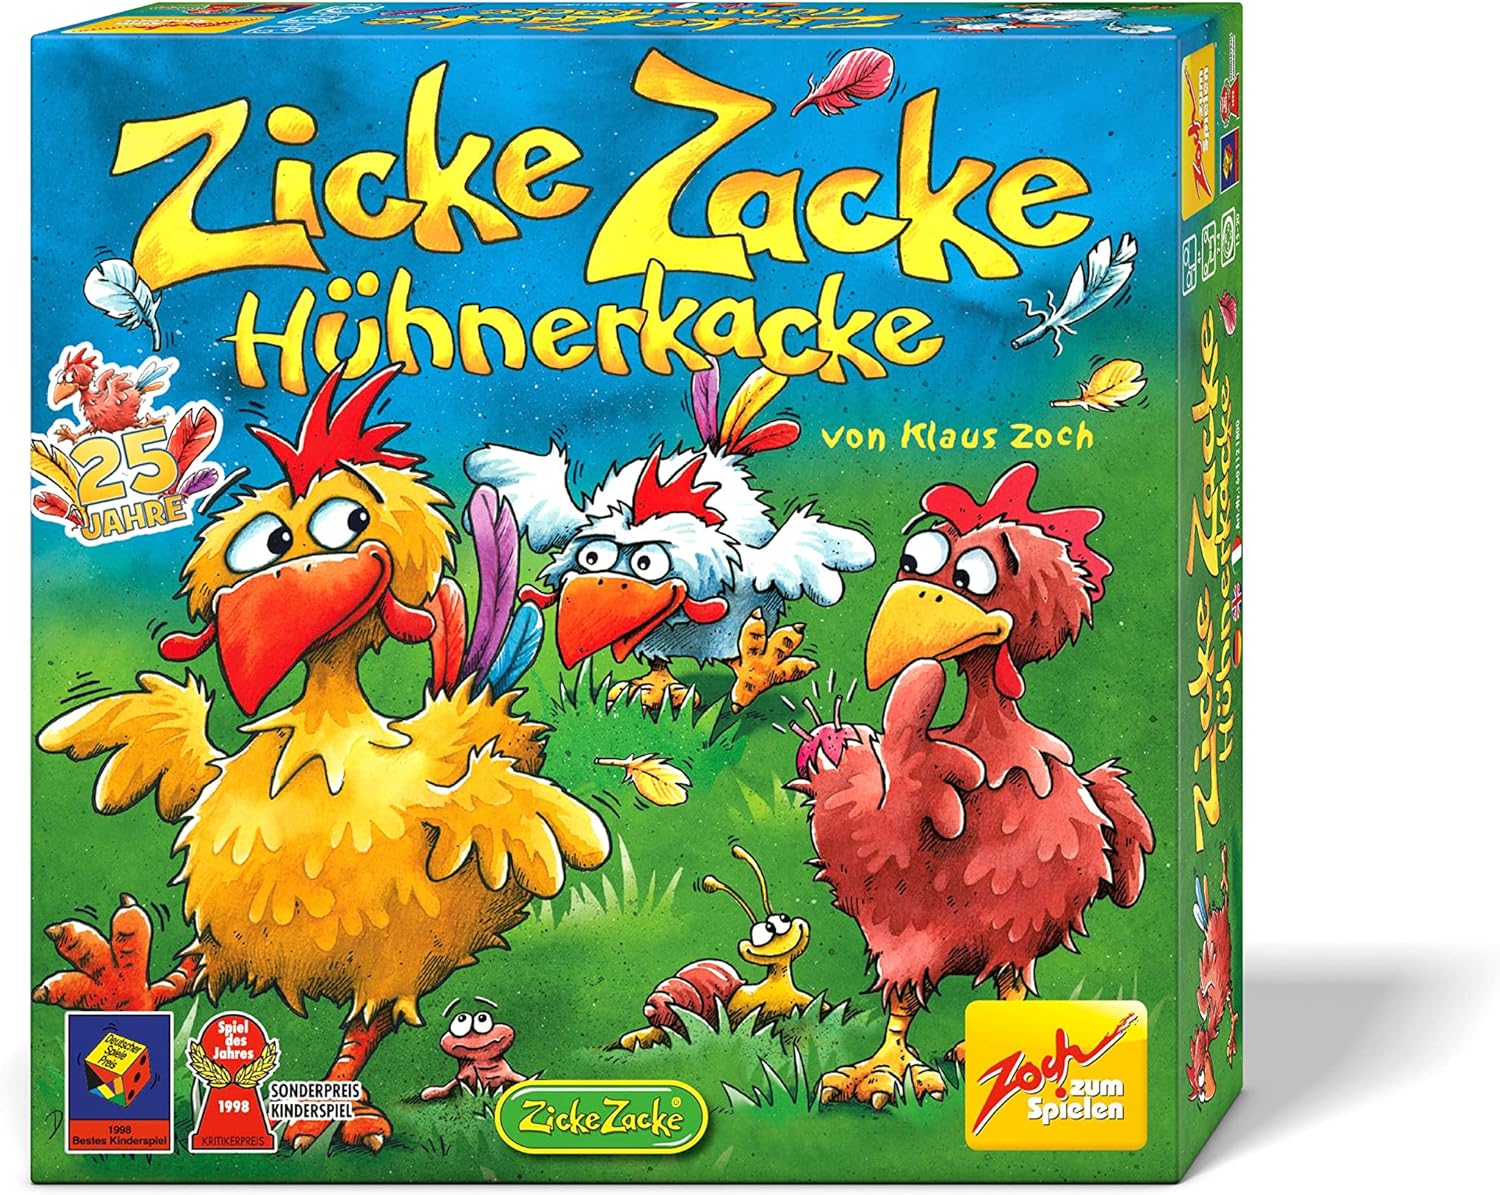 Spielszene von 'Zicke Zacke Hühnerkacke', einem preisgekrönten Brettspiel für 4-Jährige, zeigt Kinder beim Spielen auf einem farbenfroh gestalteten Hühnerhof-Brett.